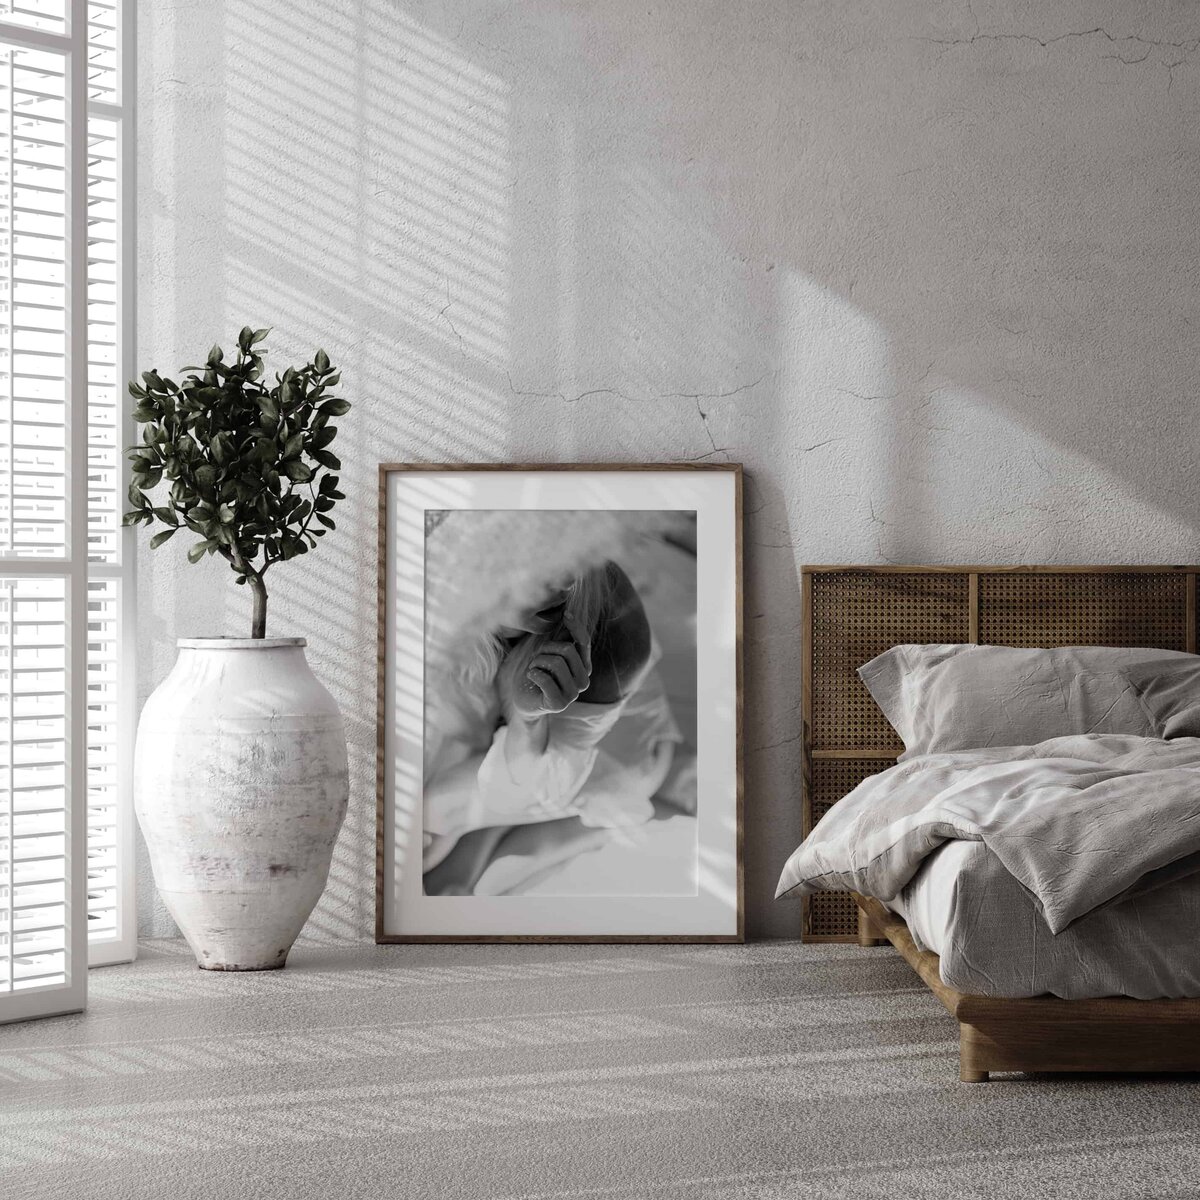 Et sort rammet bilde fra boudoirfotografering.i Oslo står på gulvet i et soverom.